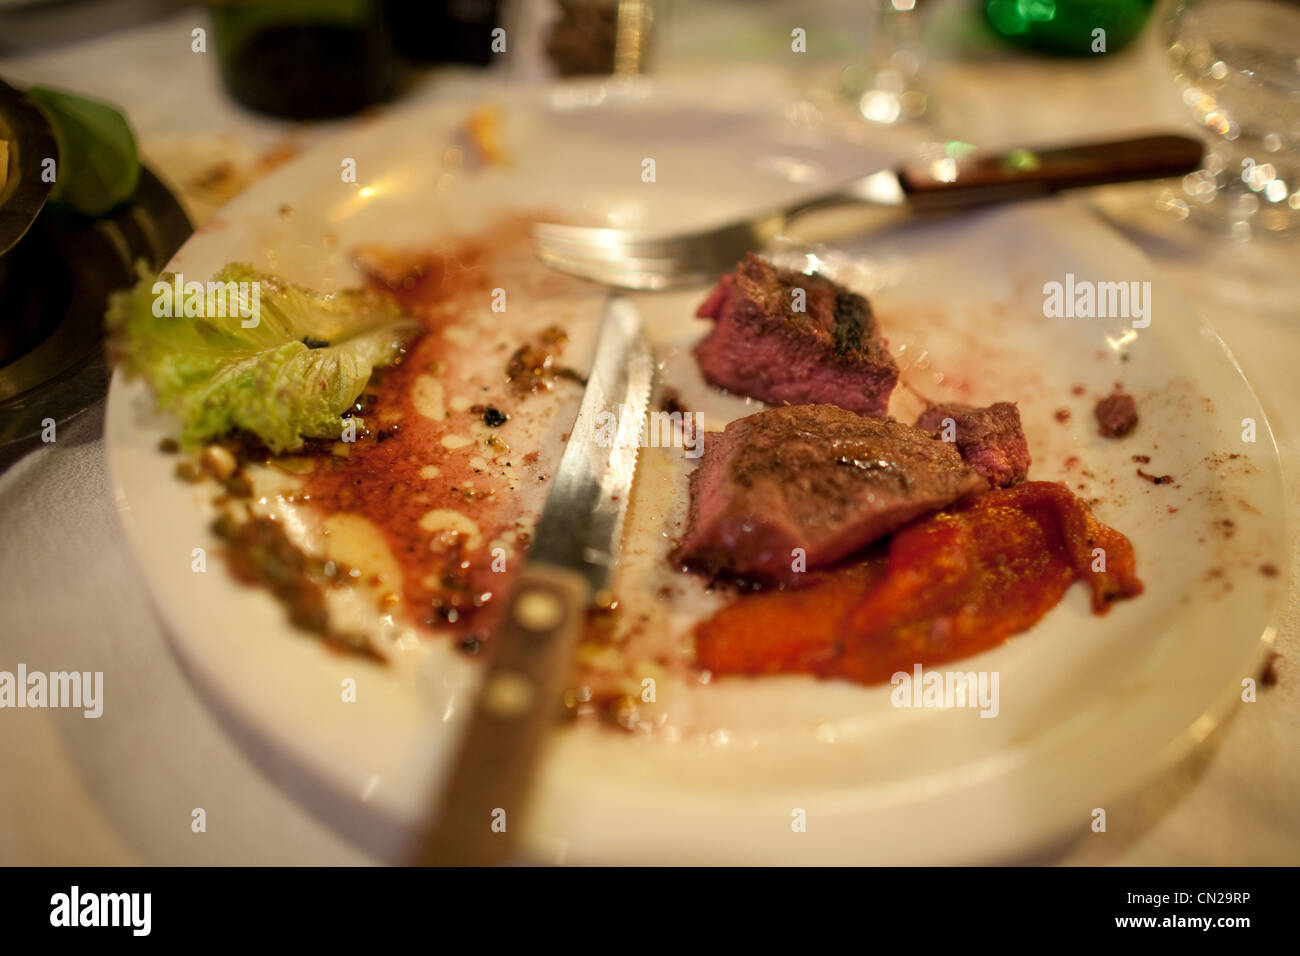 Half eaten meal on plate Stock Photo